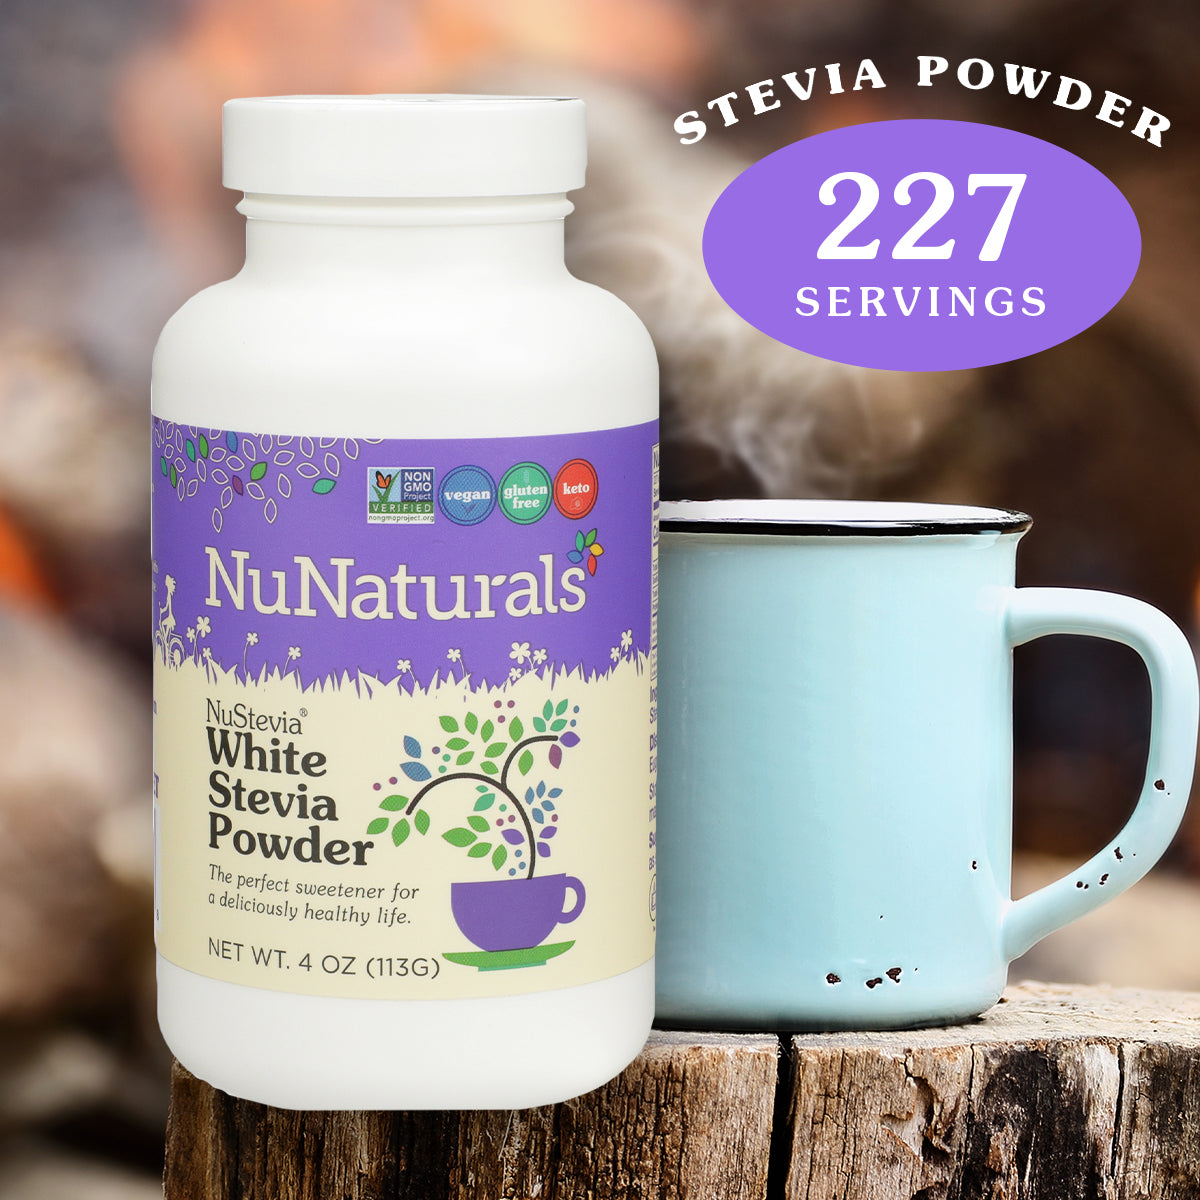 4 oz. NuNaturals White Stevia Powder